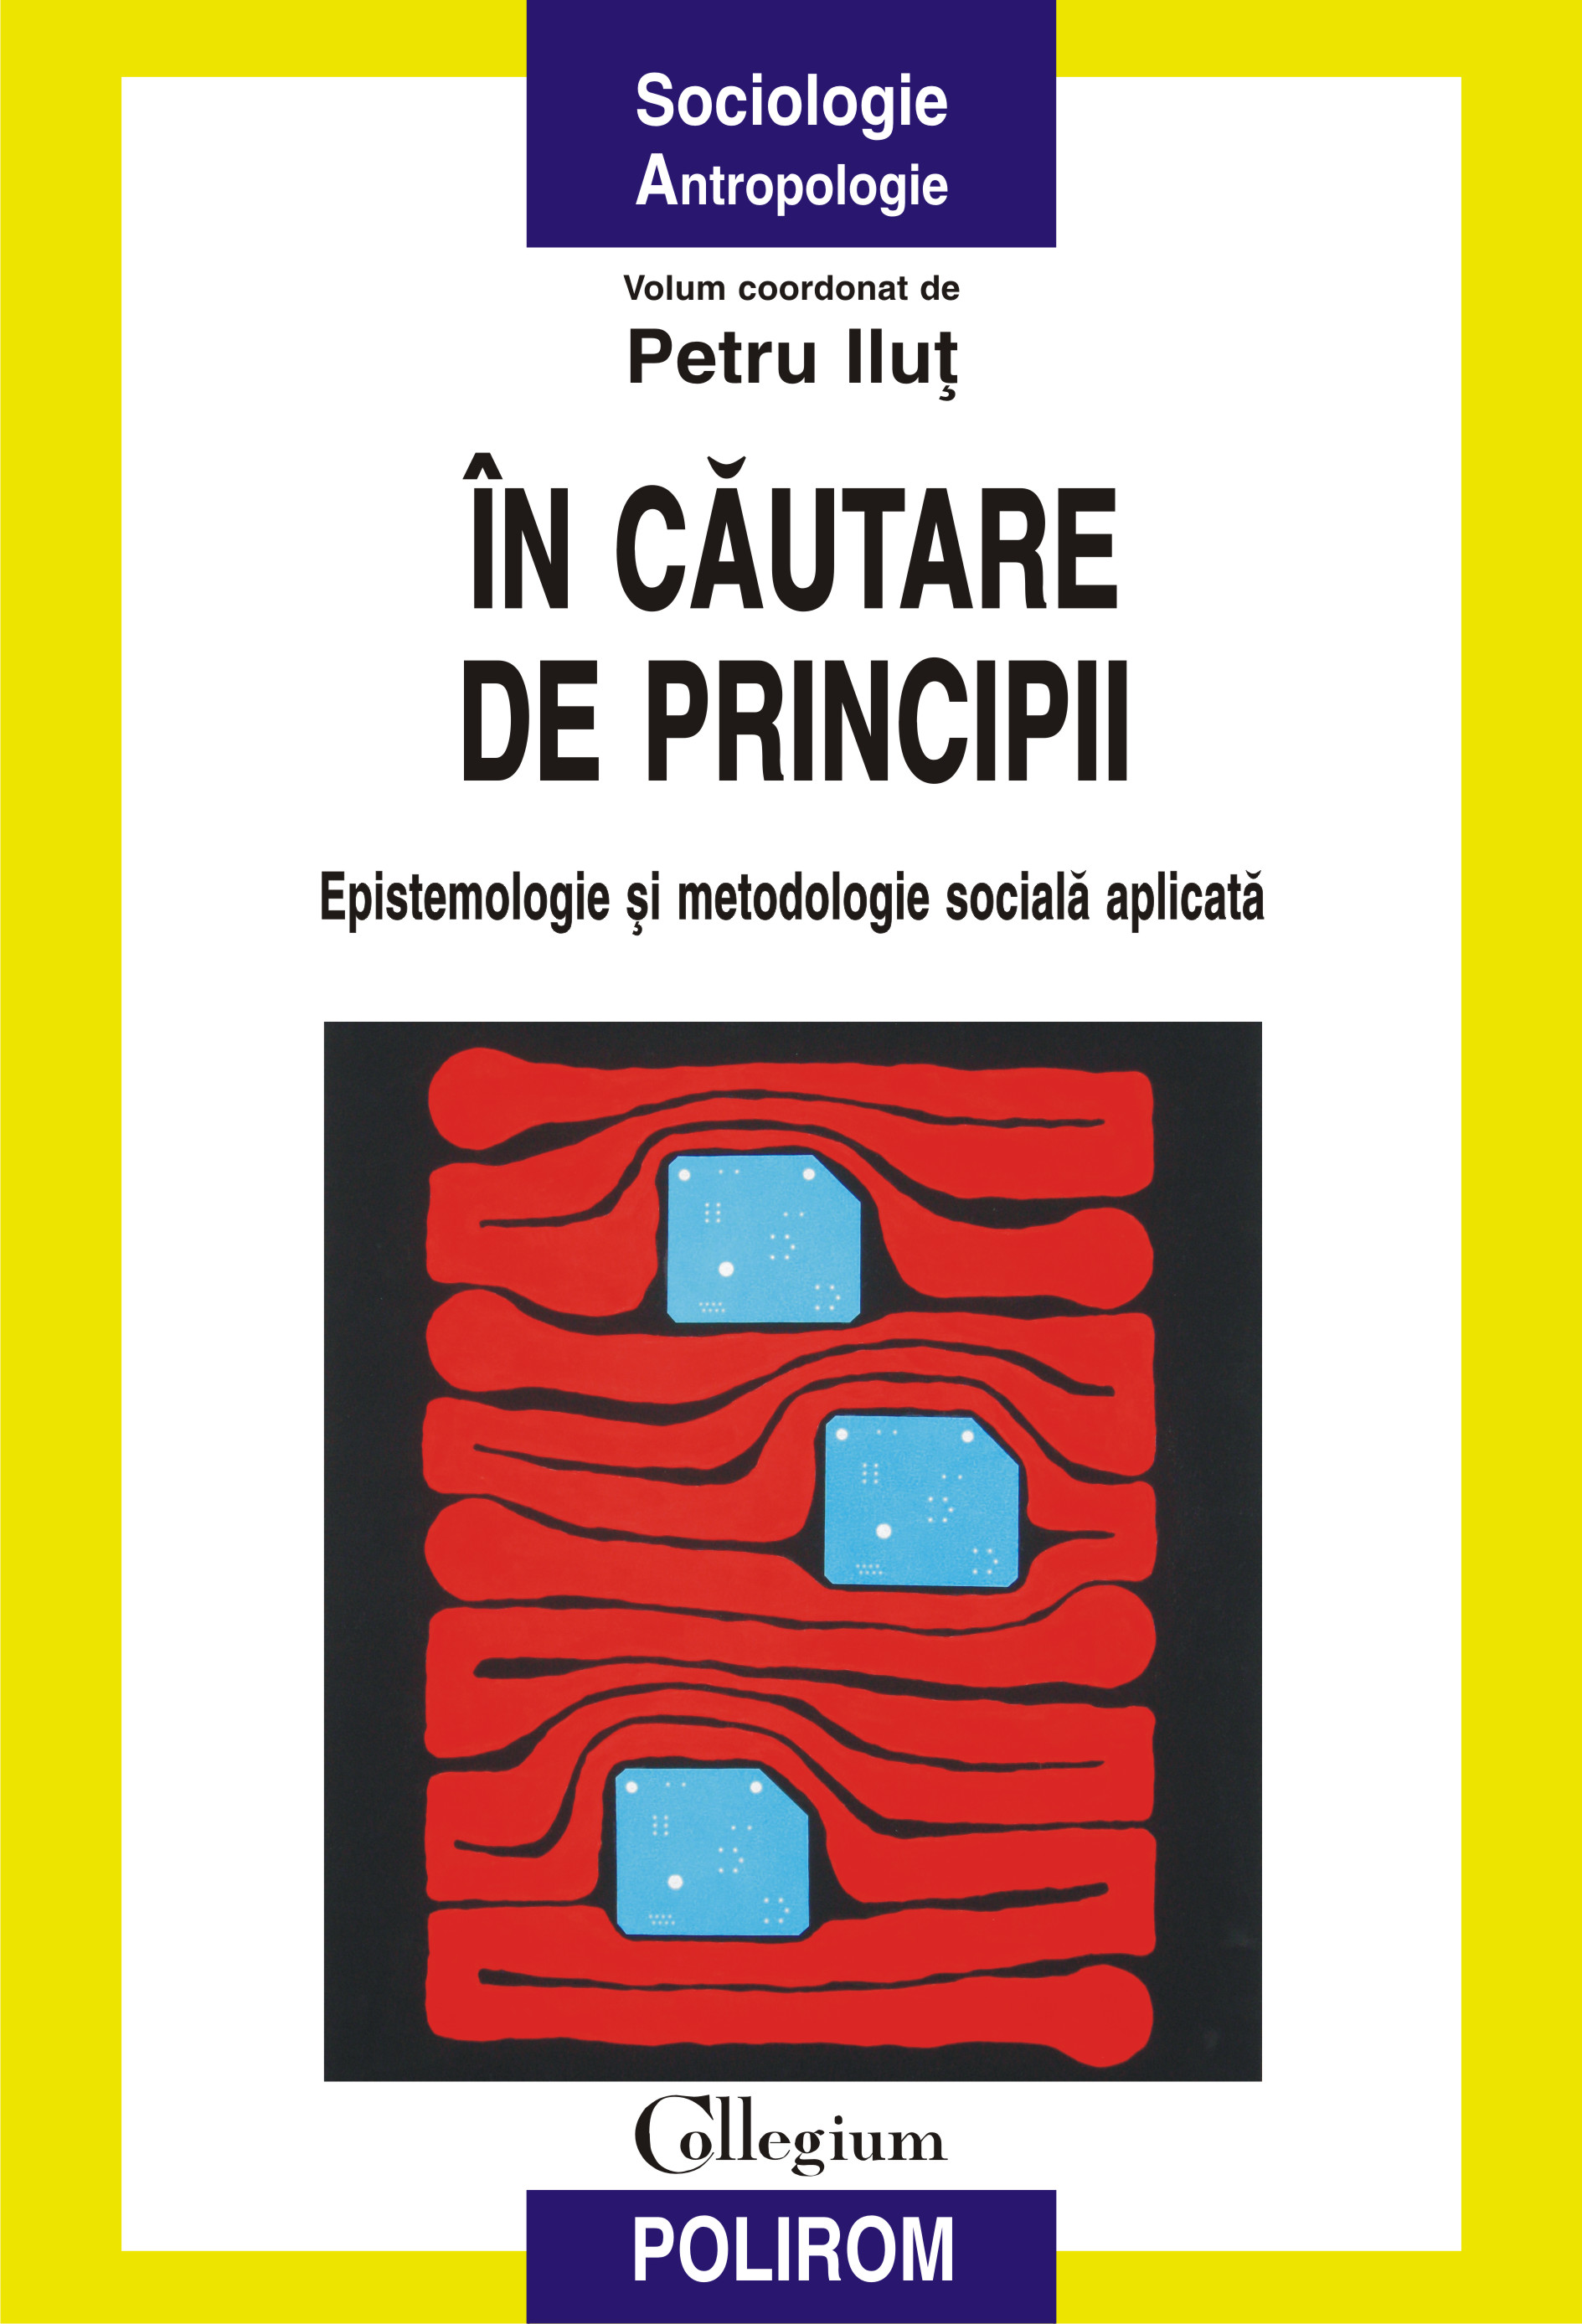 eBook in cautare de principii. Epistemologie si metodologie sociala aplicata - Petru (coord.) Ilut